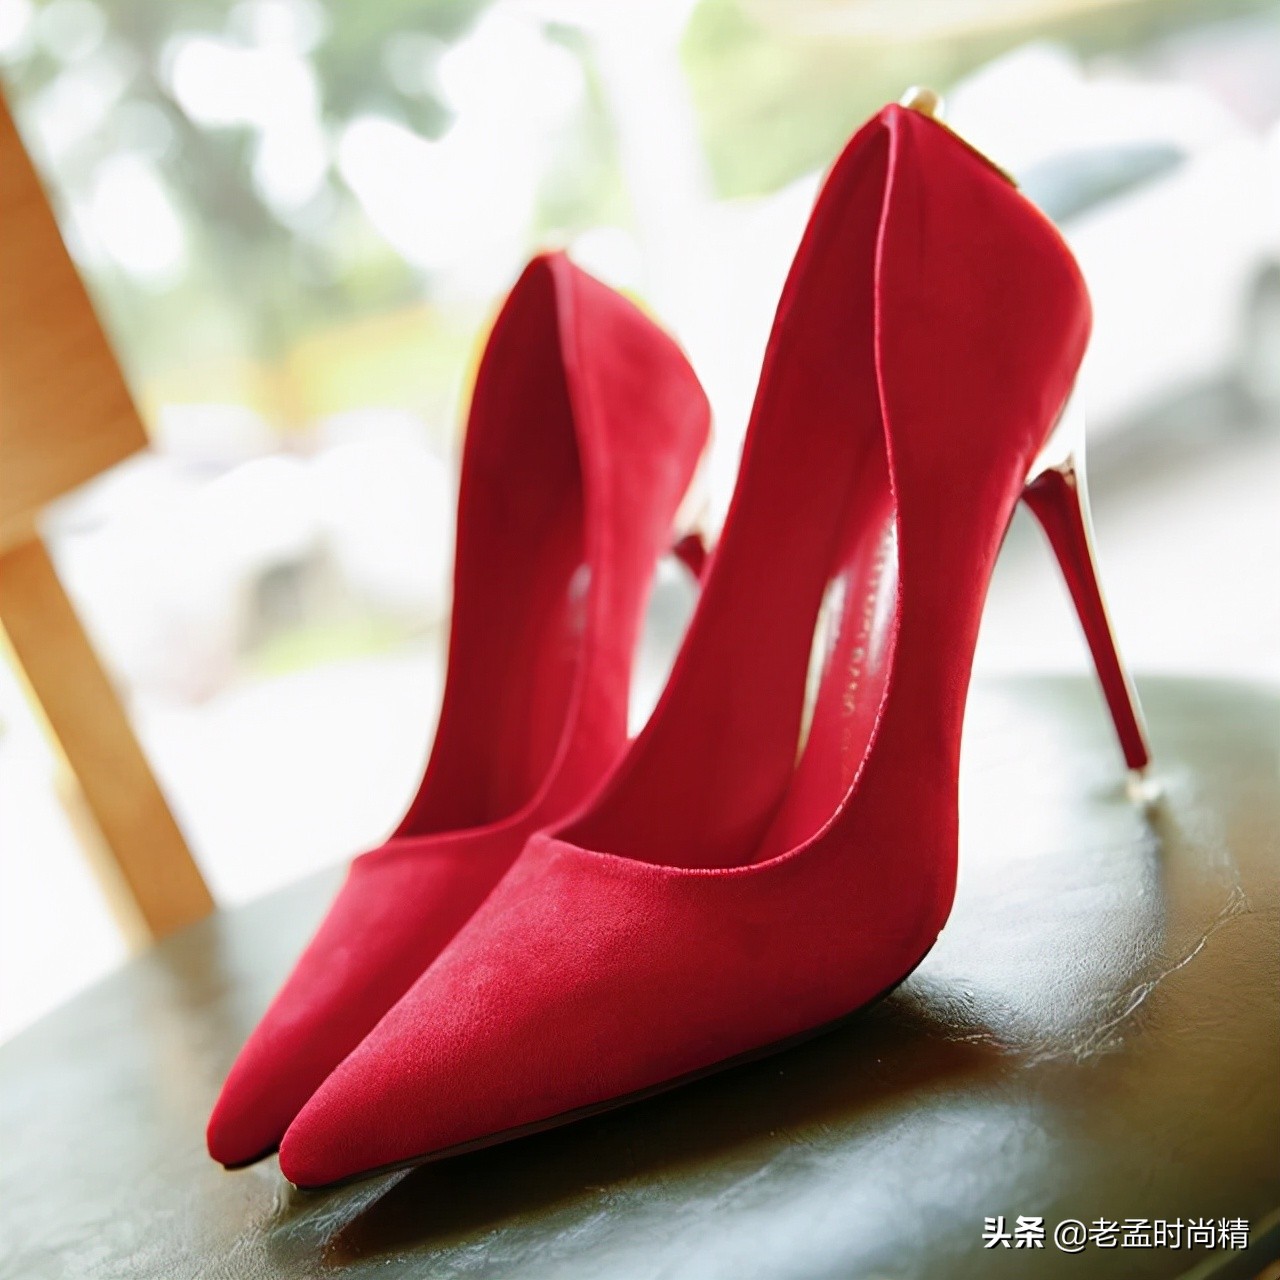 你知道吗？秋季开始流行婚鞋的高跟鞋，鲜艳的红色很显眼非常吸睛